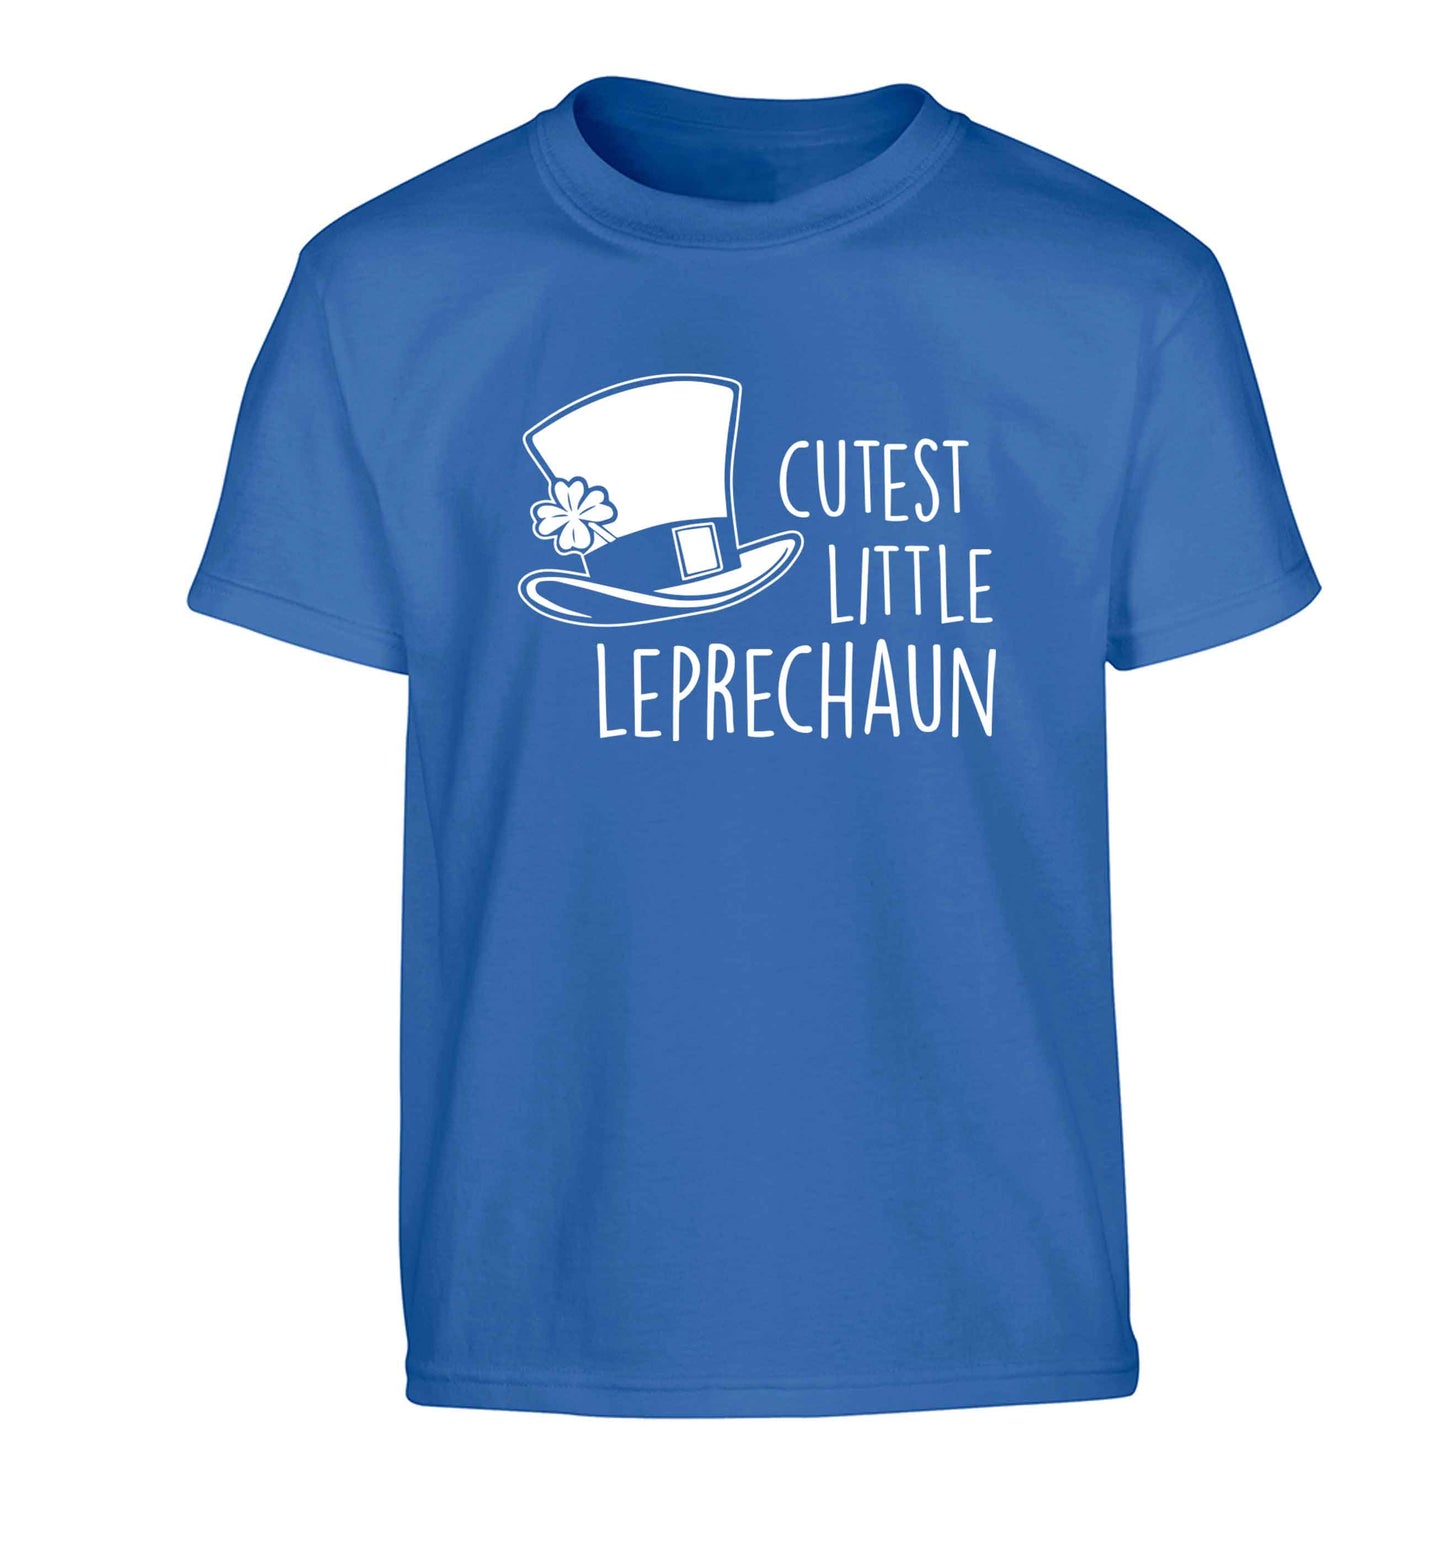 Cutest little leprechaun Children's blue Tshirt 12-13 Years